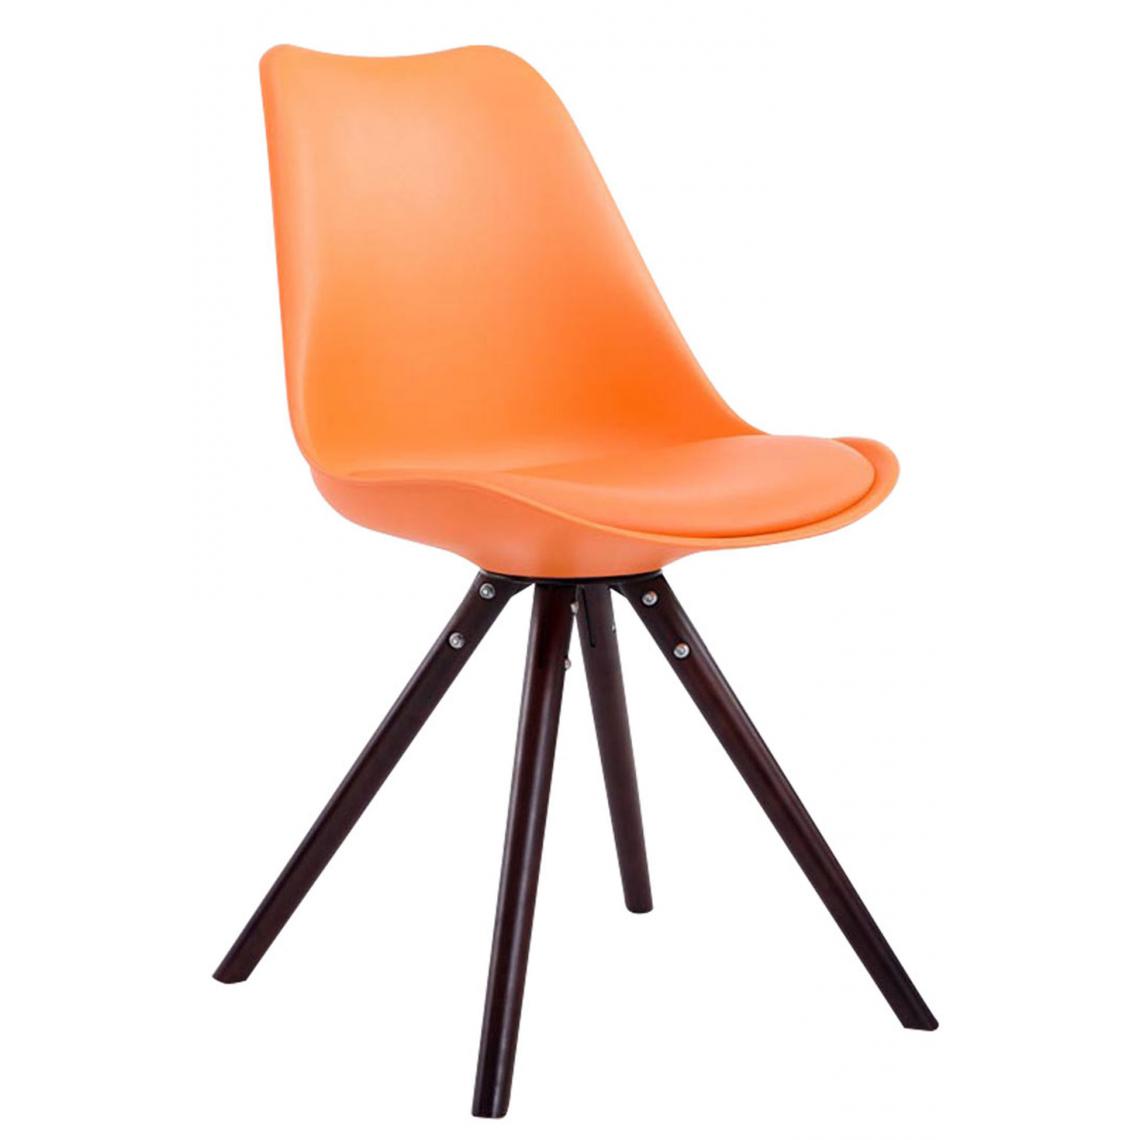 Icaverne - Superbe Chaise visiteur ligne Katmandou cuir synthétique rond cappuccino (chêne) couleur Orange - Chaises